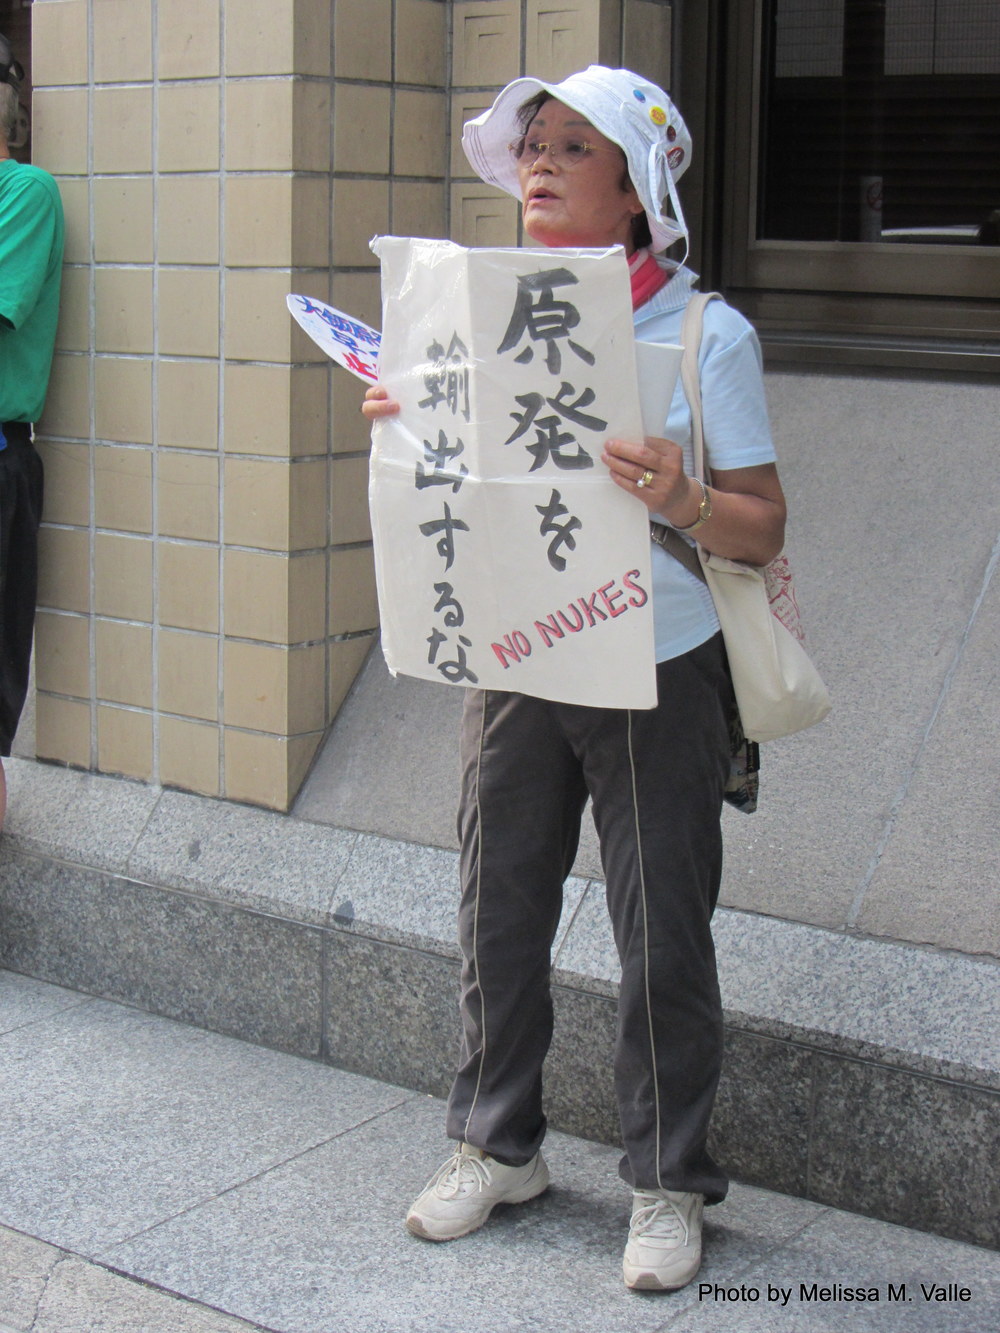 7.18.14 Kyoto, Japan-Anti-nukes protesters (3).JPG